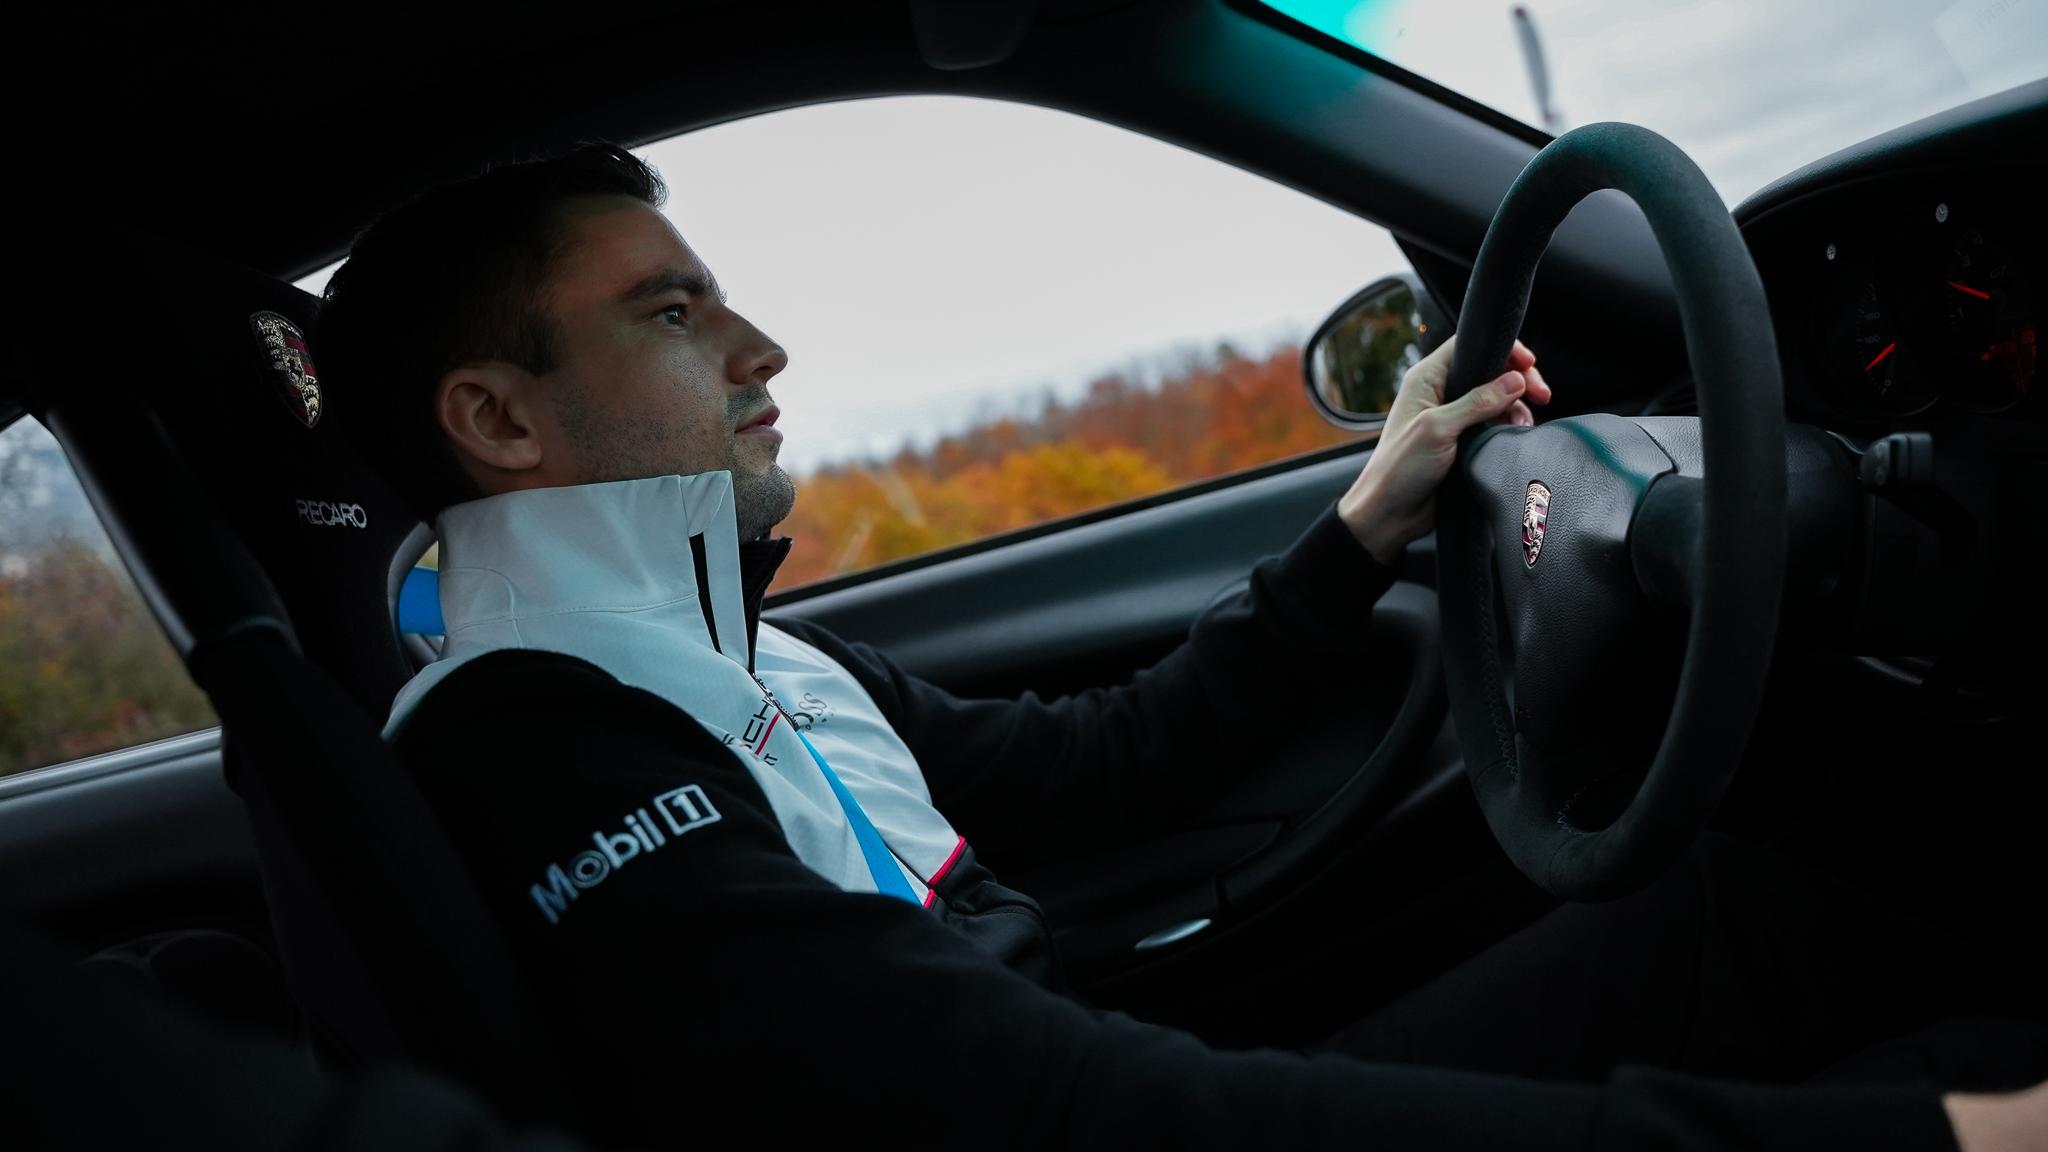 FÅR SJANSEN: Tommy Østgaard blir en av fire fabrikkførere i det nye Porsche-teamet i e-sport. Her er han bak rattet på en virkelig Porsche.